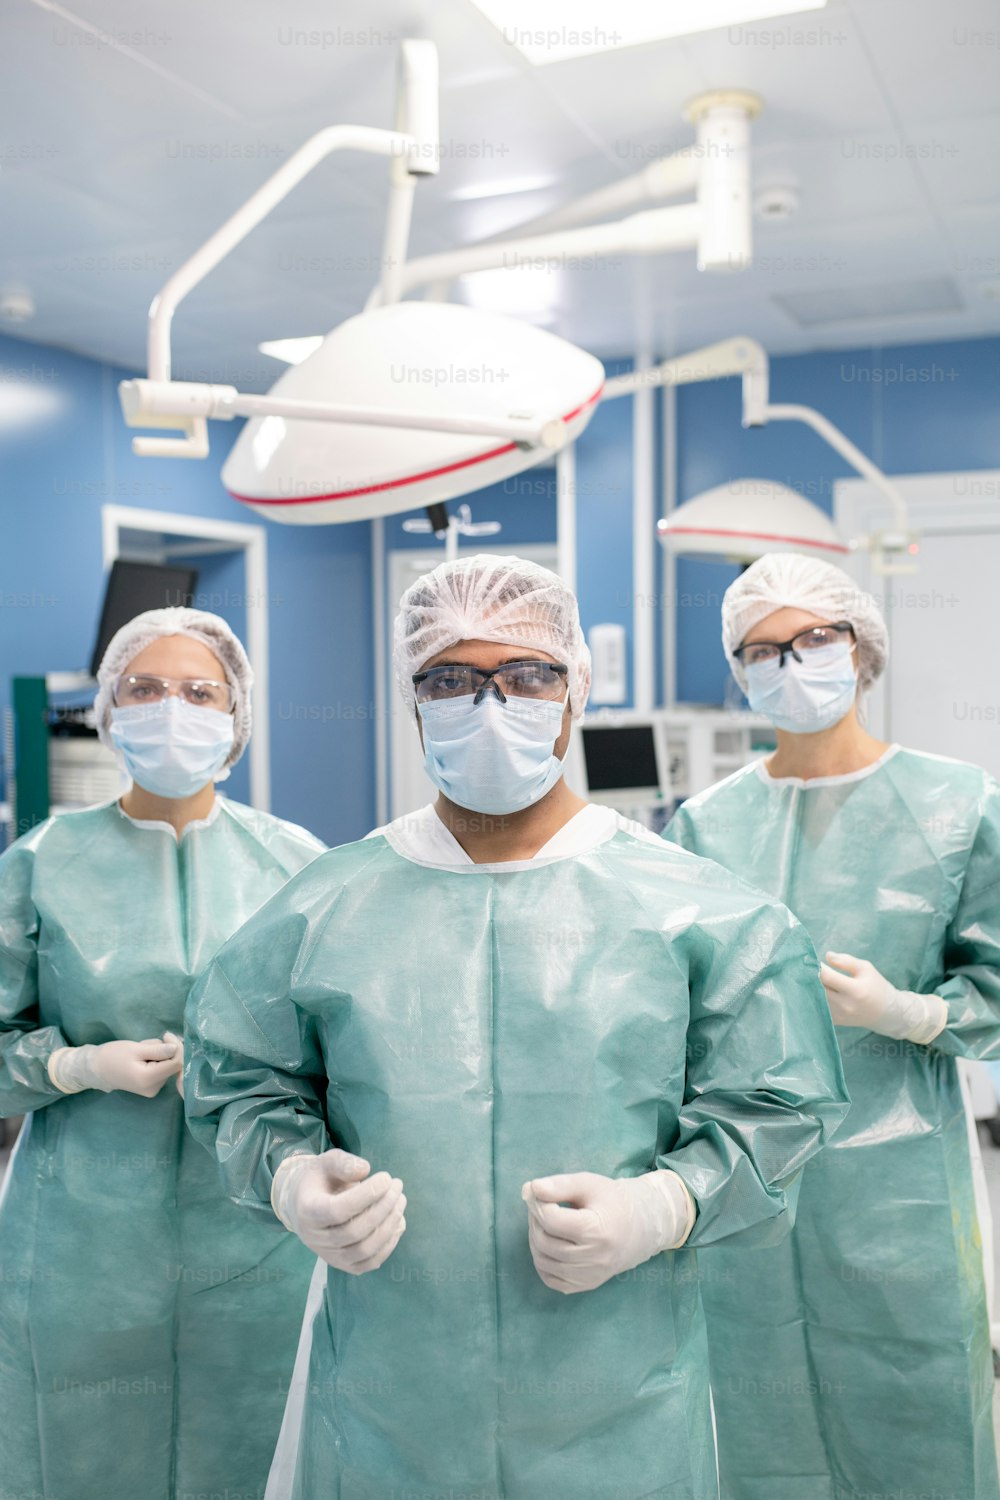 보호 작업복을 입은 세 명의 현대 외과 의사가 수술실에서 카메라 앞에 서서 수술을 준비하고 있다